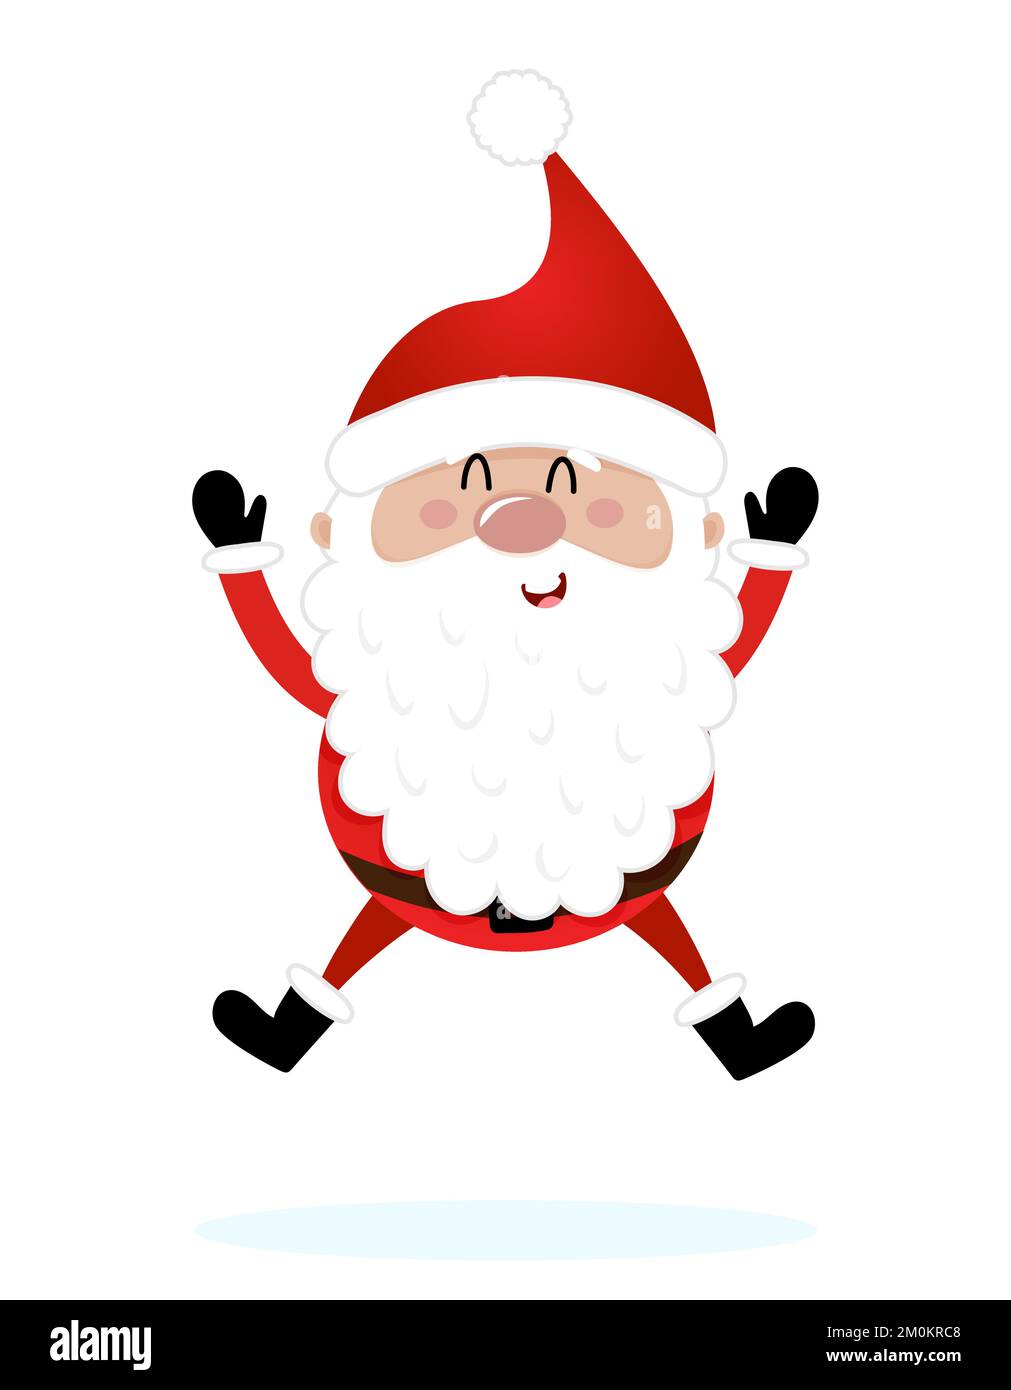 Jumping Santa - Darstellung im Cartoon-Stil. Frohe Weihnachten und Frohes neues Jahr. Lustige Figuren in der Werkstatt des Weihnachtsmanns. Stock Vektor